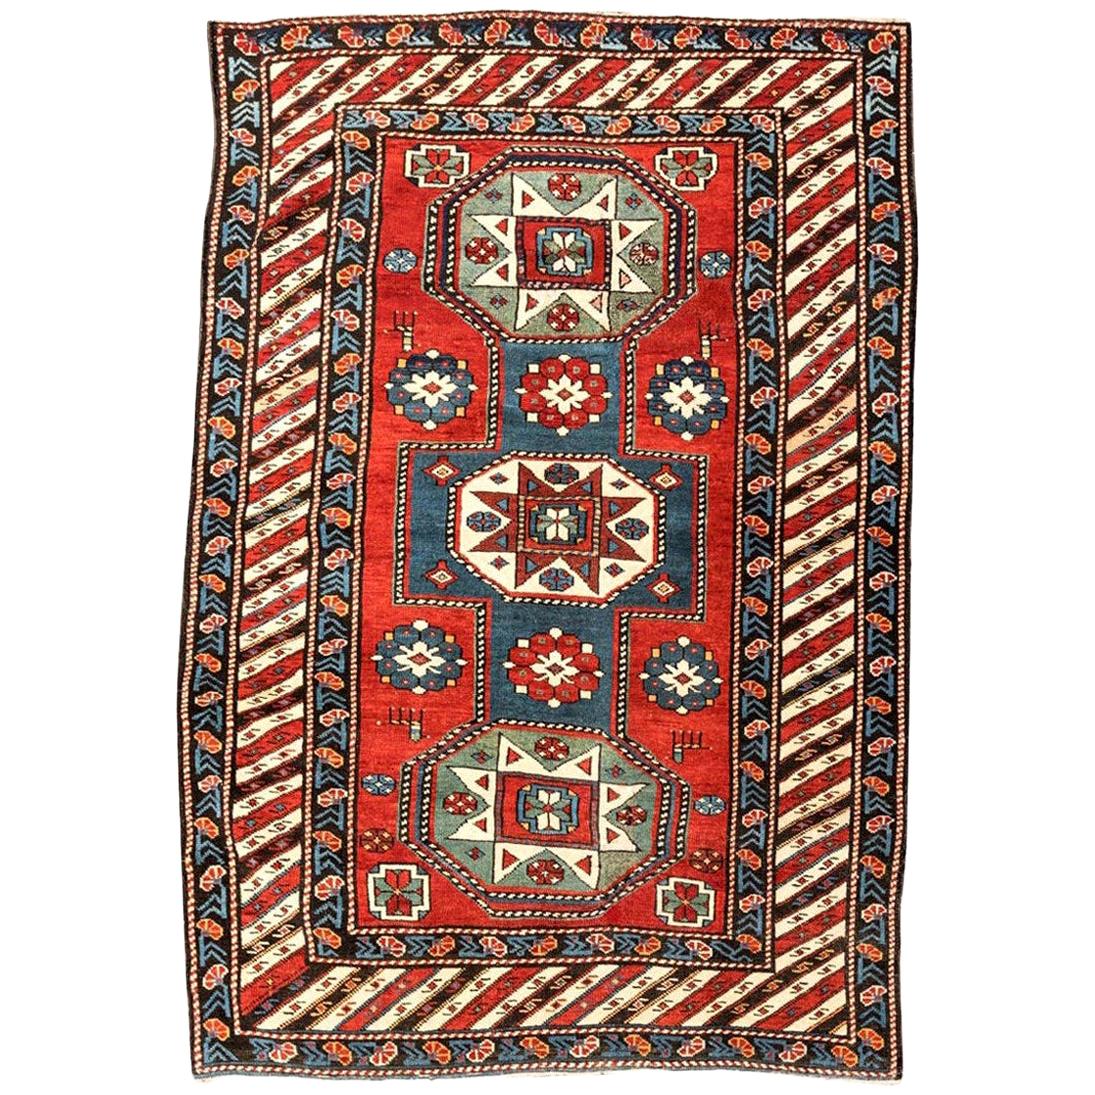 19th Century Caucasian Rug Geometric Kazak Design, circa 1875-1900